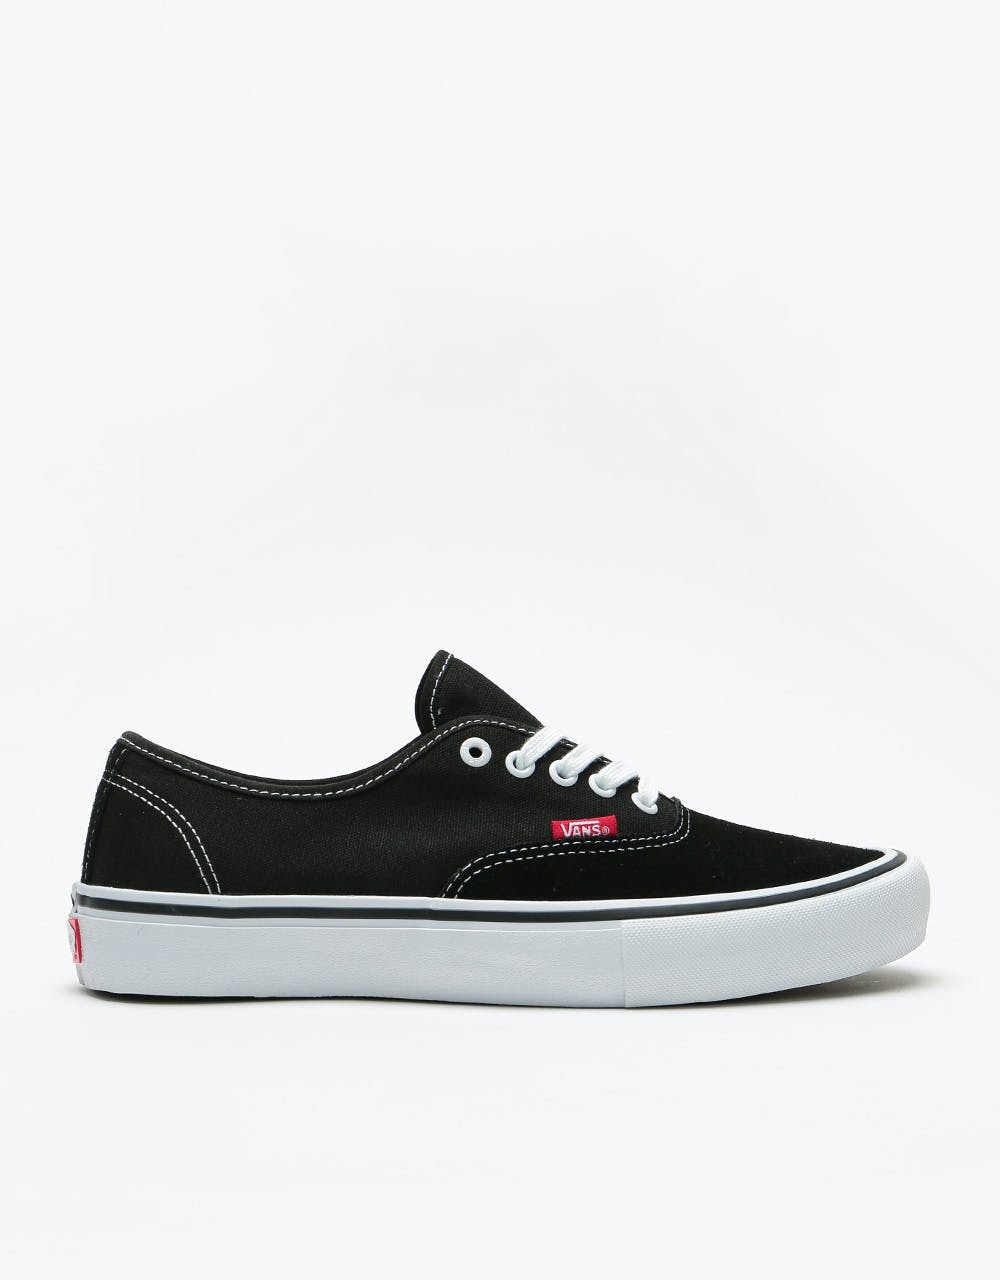 Vans Authentic Pro Skate Shoes - Black/True White